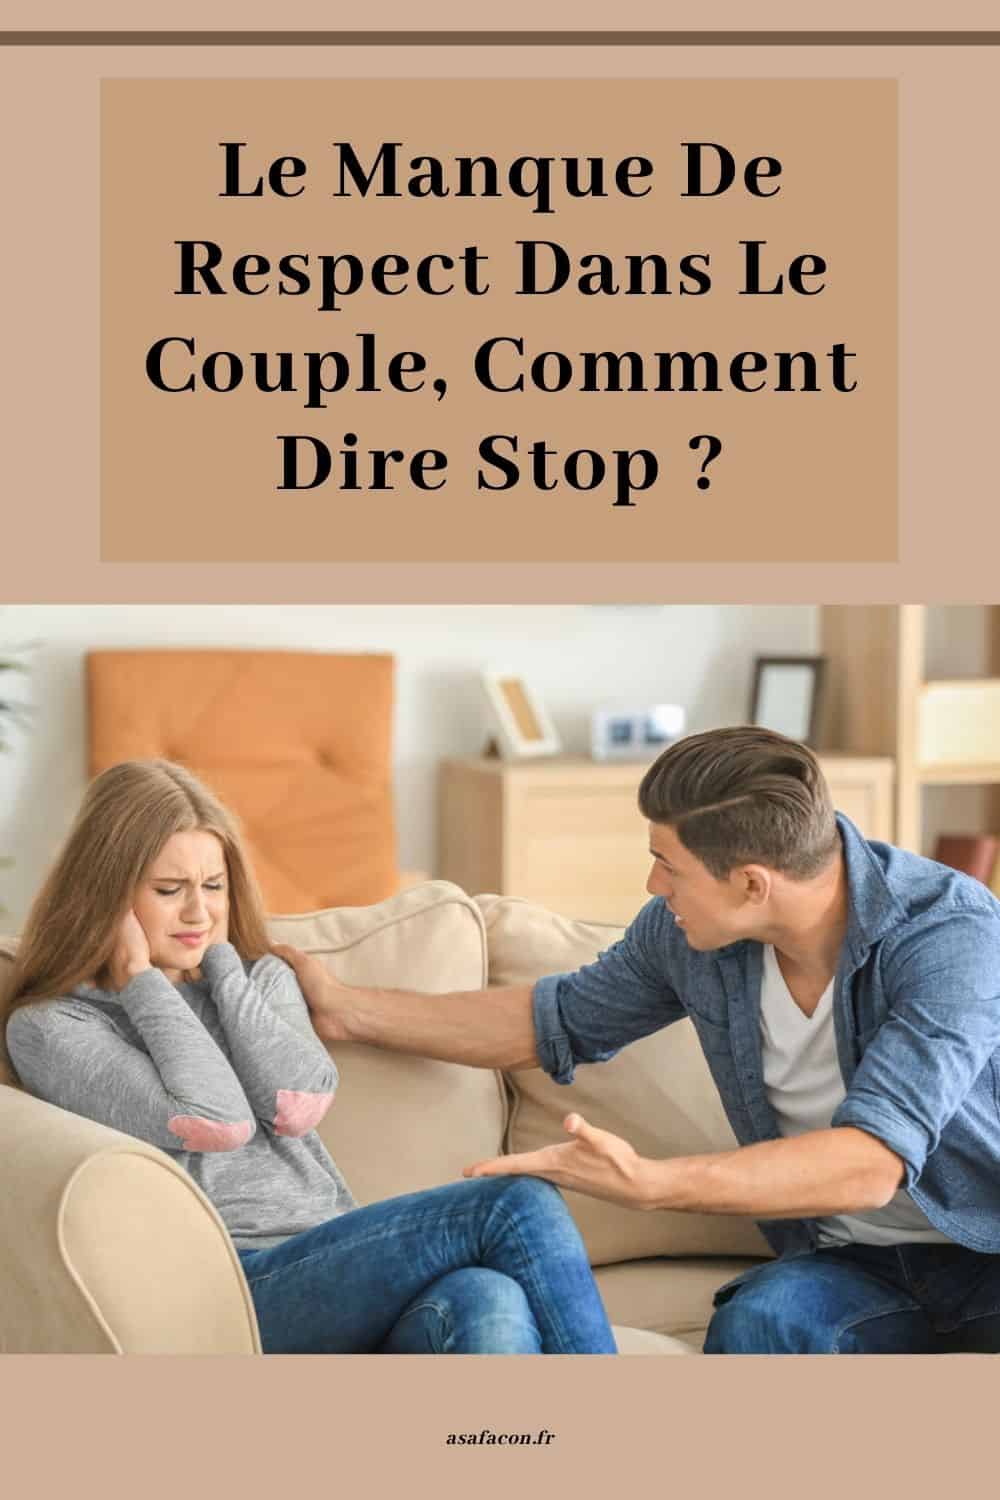 Le Manque De Respect Dans Le Couple, Comment Dire Stop 